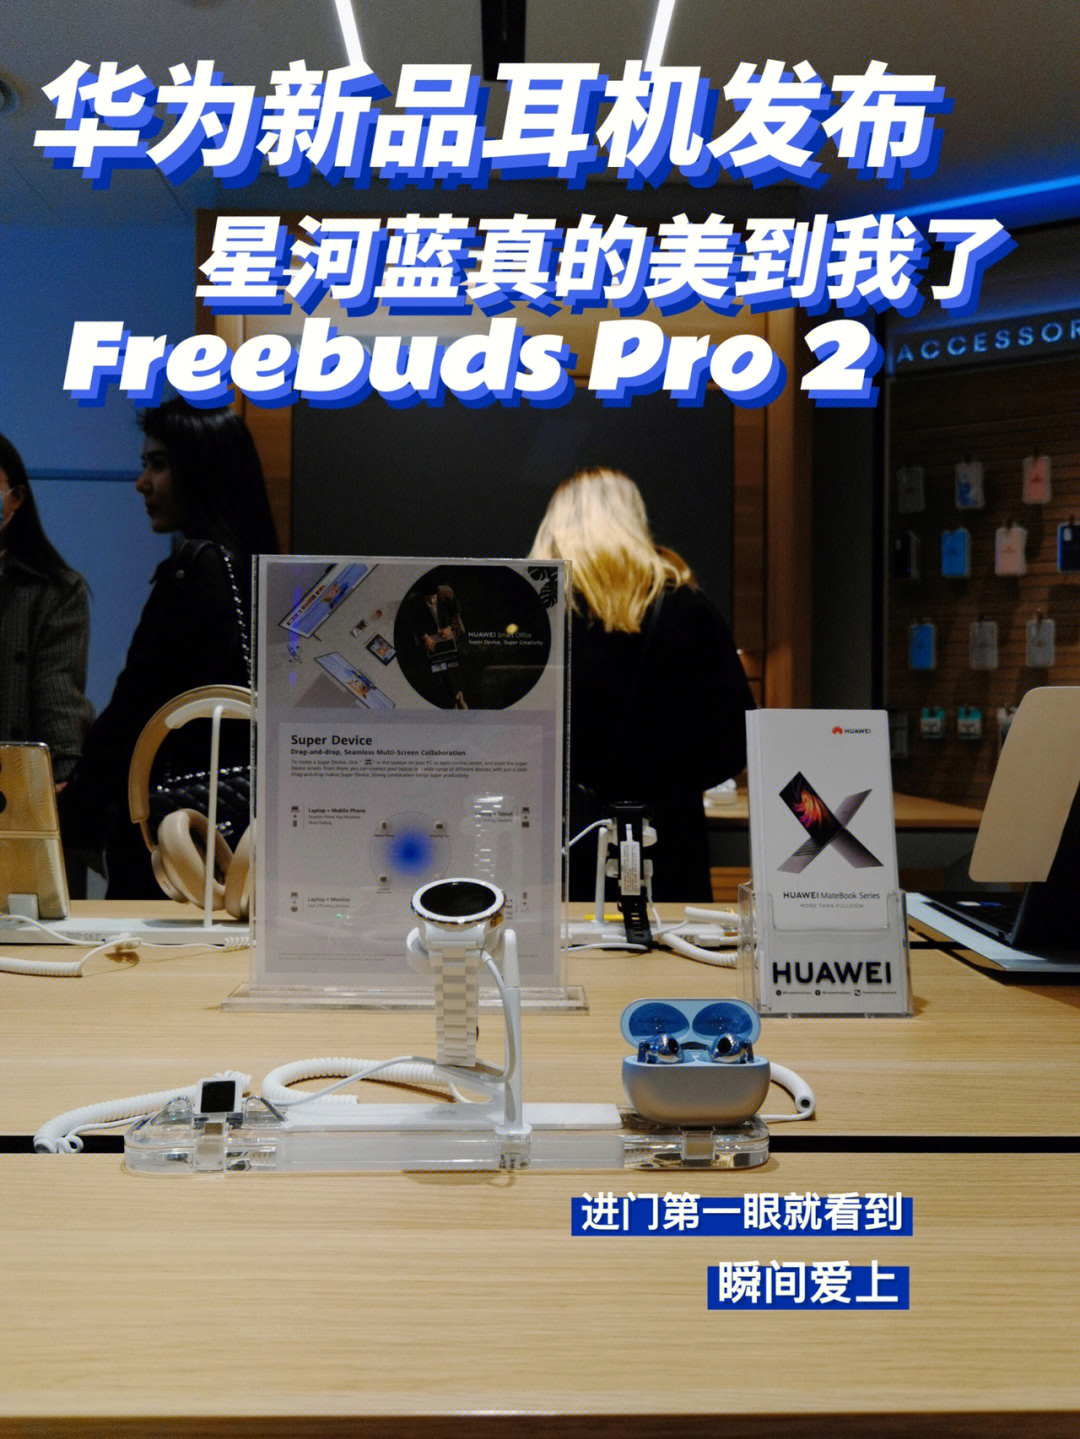 hello上周受邀参加了华为新品耳机freebuds pro 2的发布会